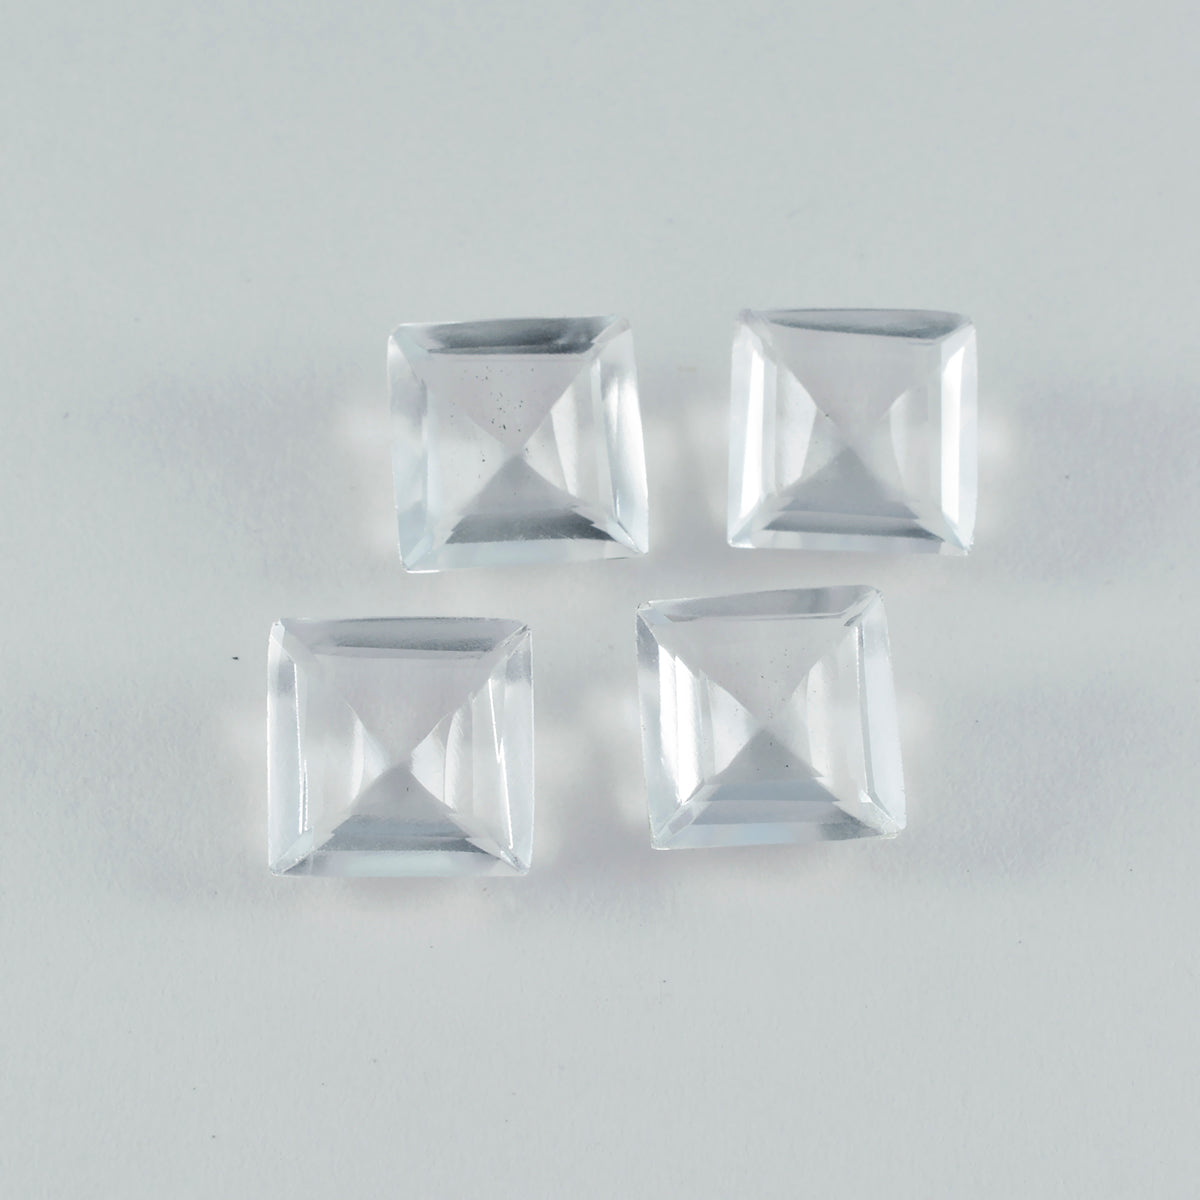 Riyogems 1 Stück weißer Kristallquarz, facettiert, 13 x 13 mm, quadratische Form, hübsche, hochwertige lose Edelsteine